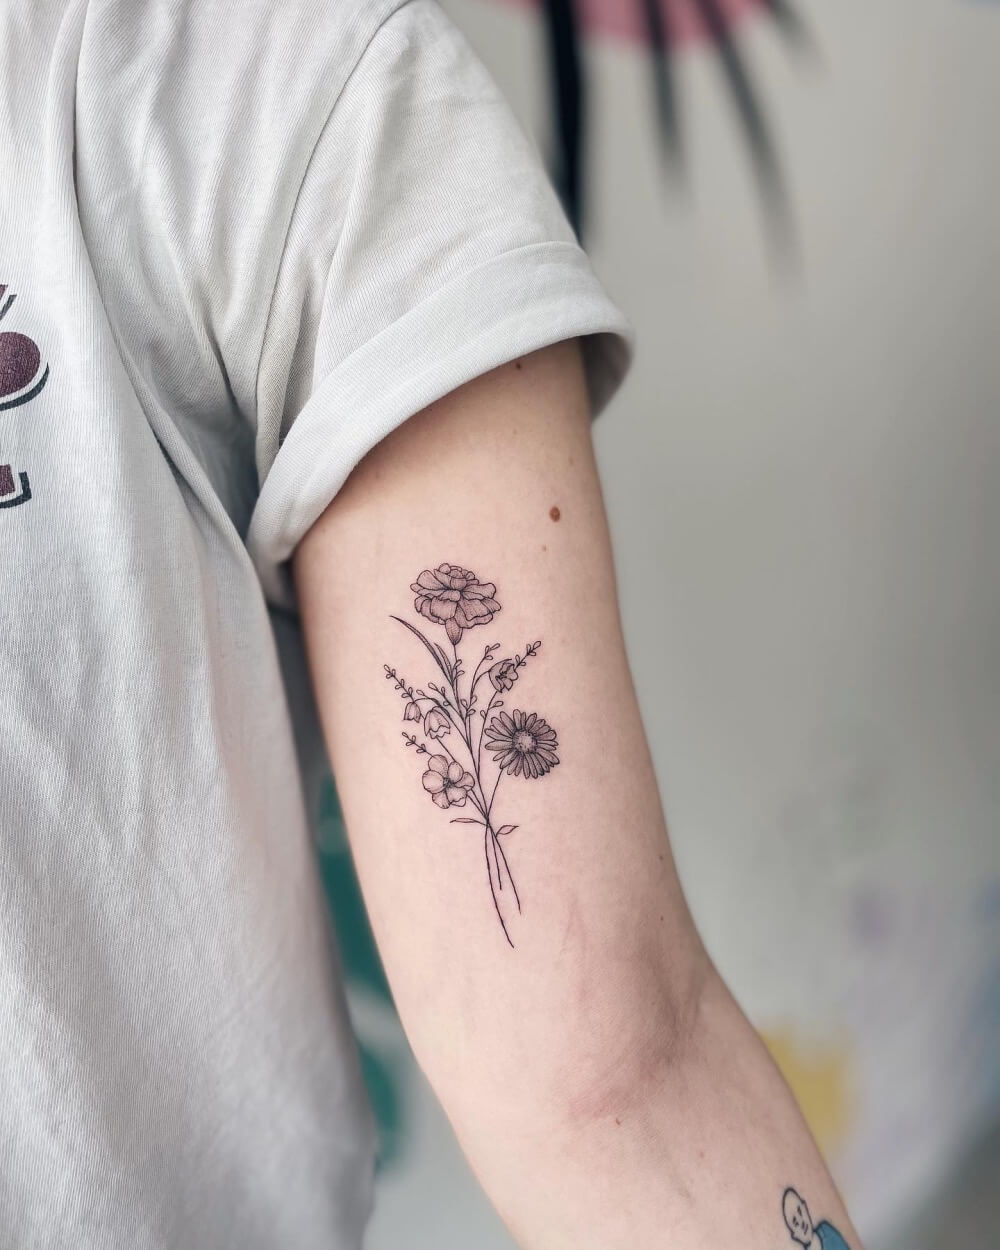 Tiny chrysanthemum temporary tattoo 🌸 | TikTok